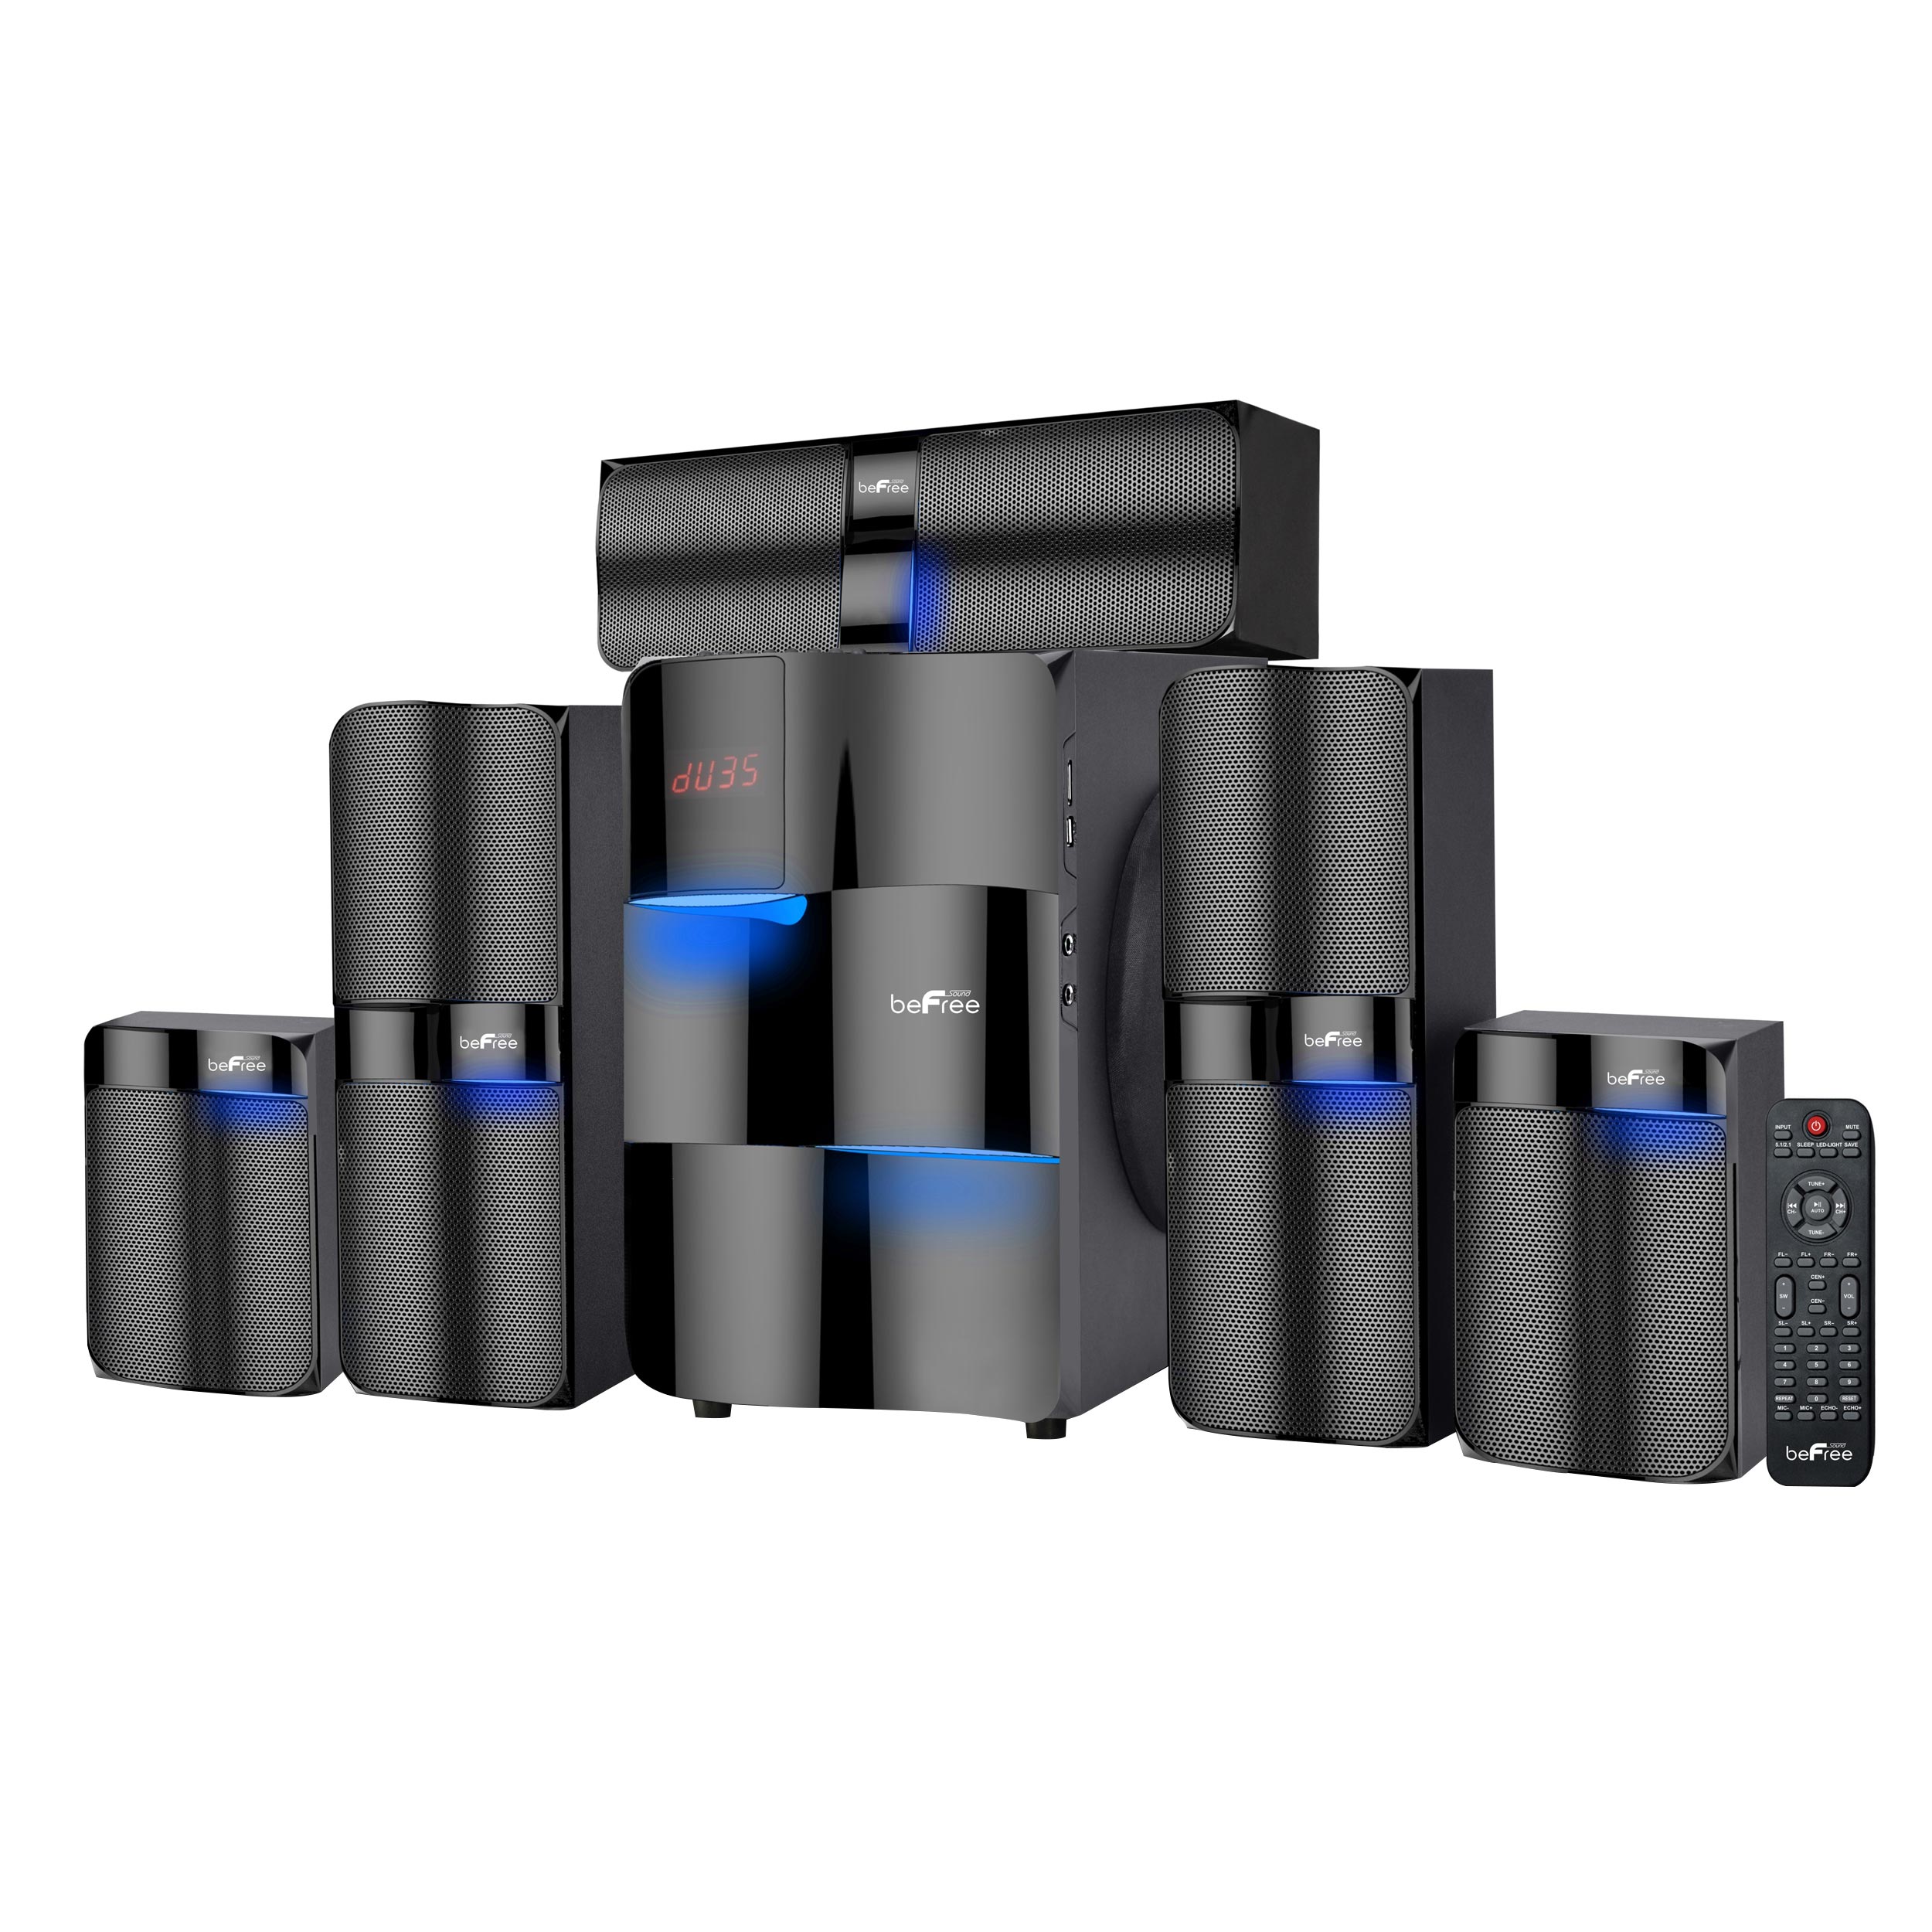 BeFree Sound 5.1 Channel Surround Sound Bluetooth Speaker System - image 1 of 3